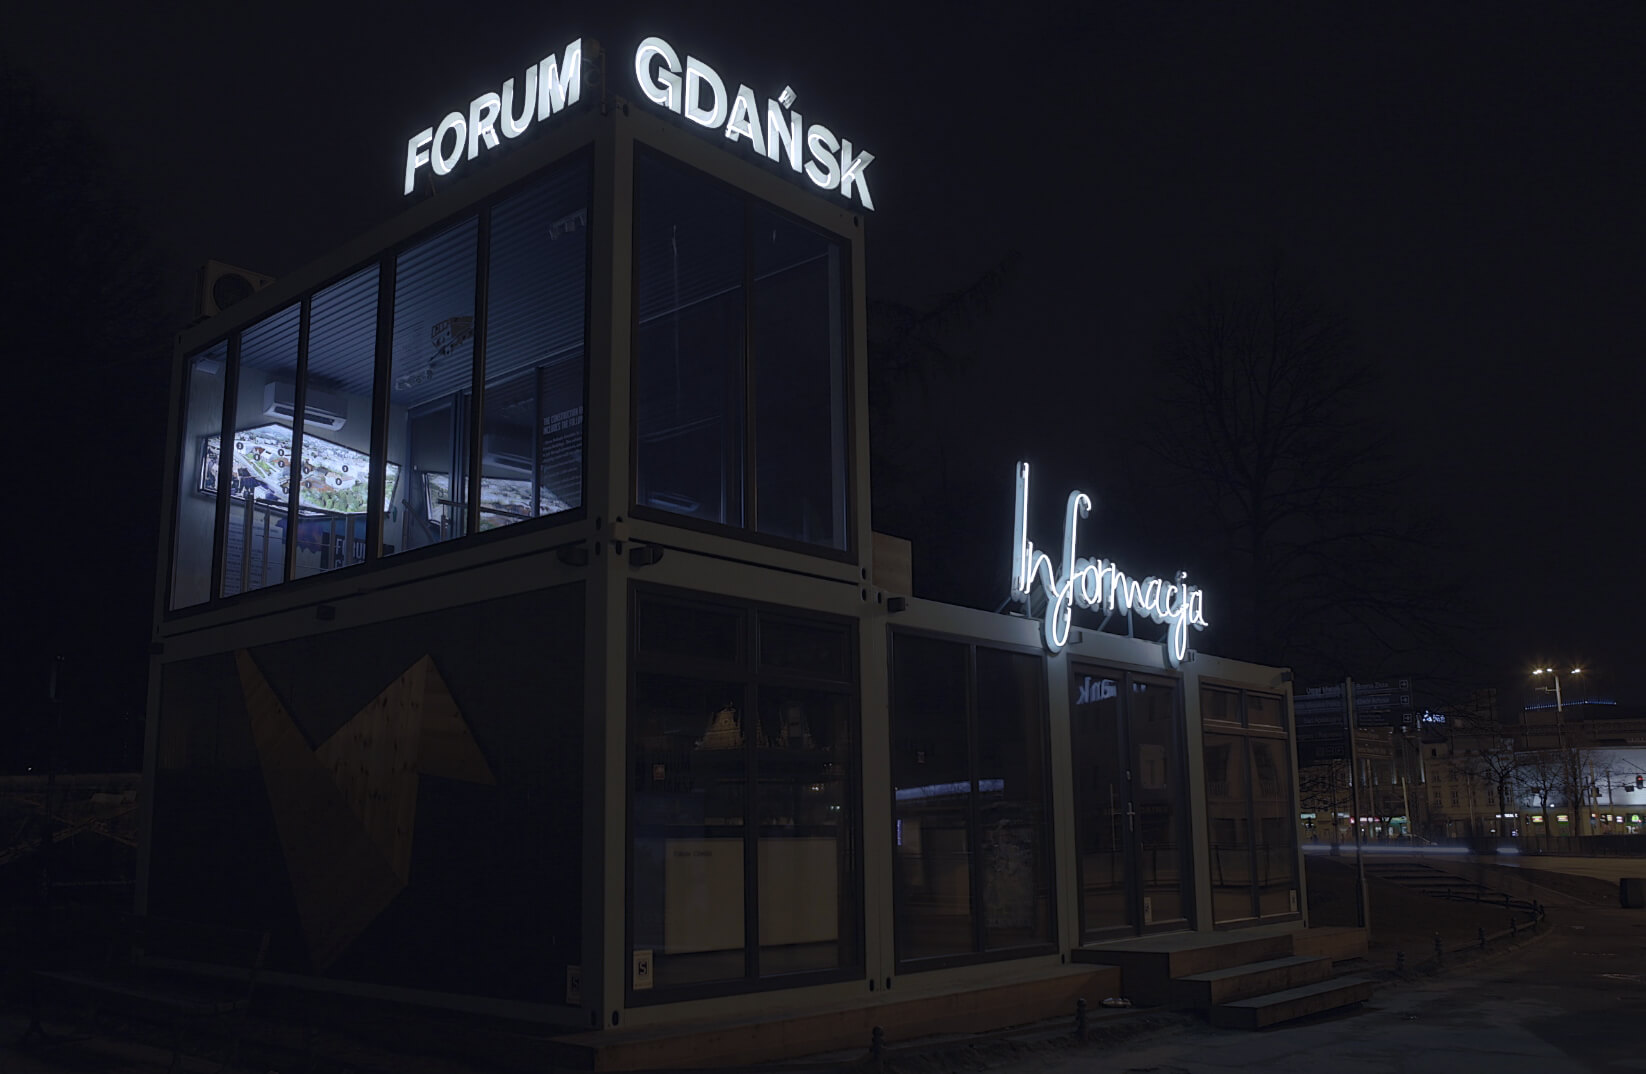 Direction Forum Gdańsk - Forum de Gdańsk - lettres lumineuses avec une enseigne au néon, montées sur un cadre, placées sur le toit du bâtiment.